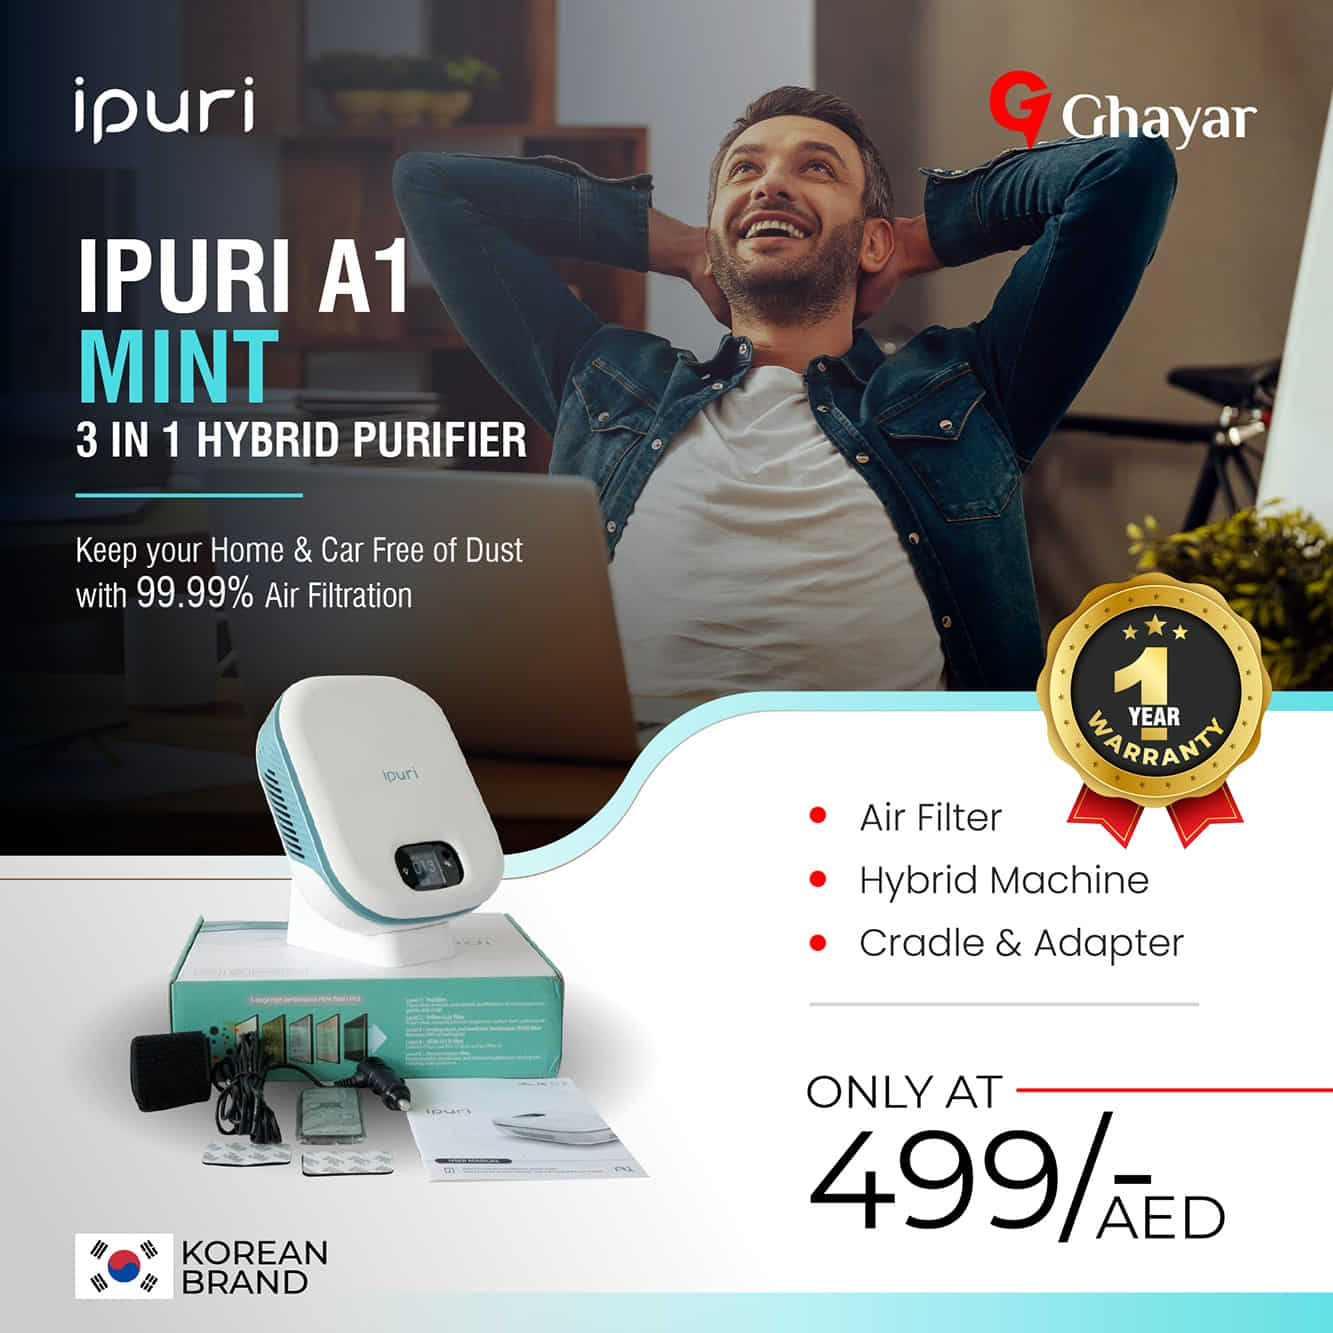 Ipuri A1 Mint 3 in 1 Hybrid Purifier